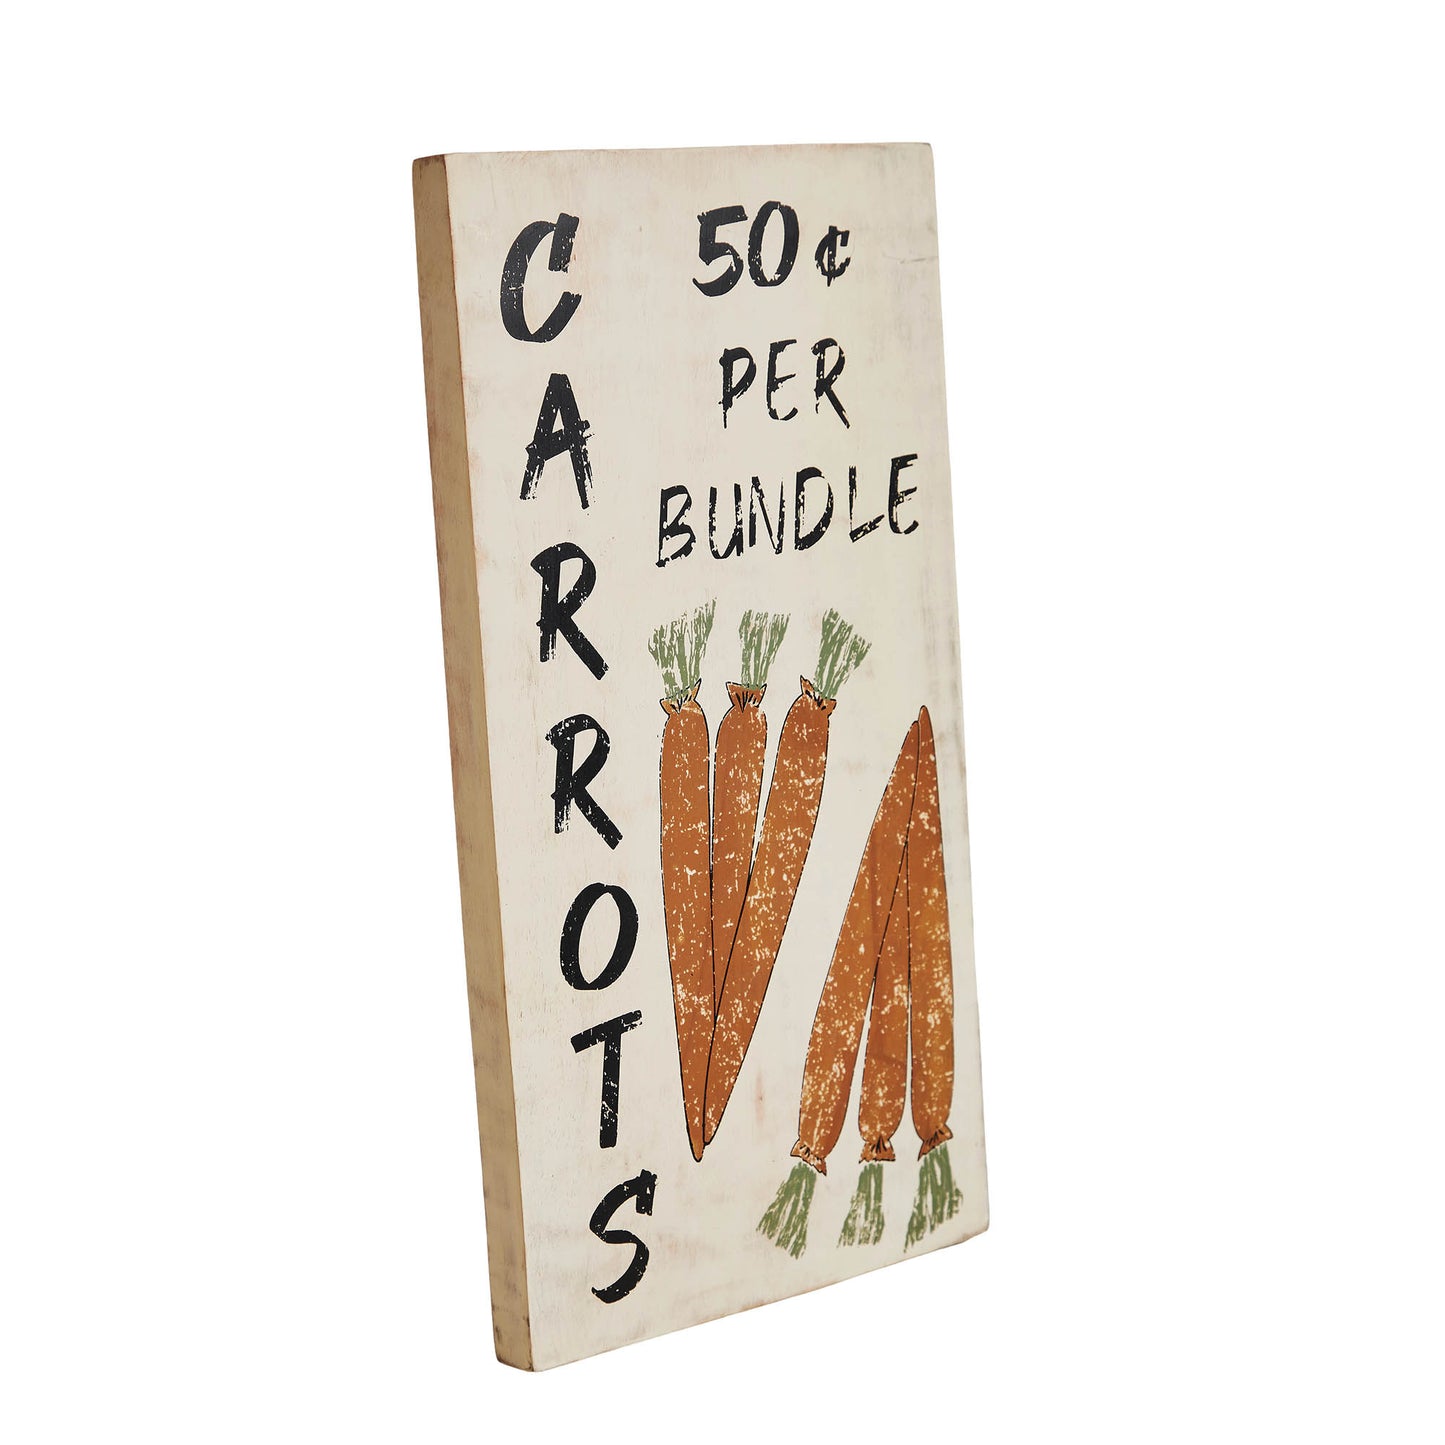 Carrot Wooden Sign 15x8 SpadezStore